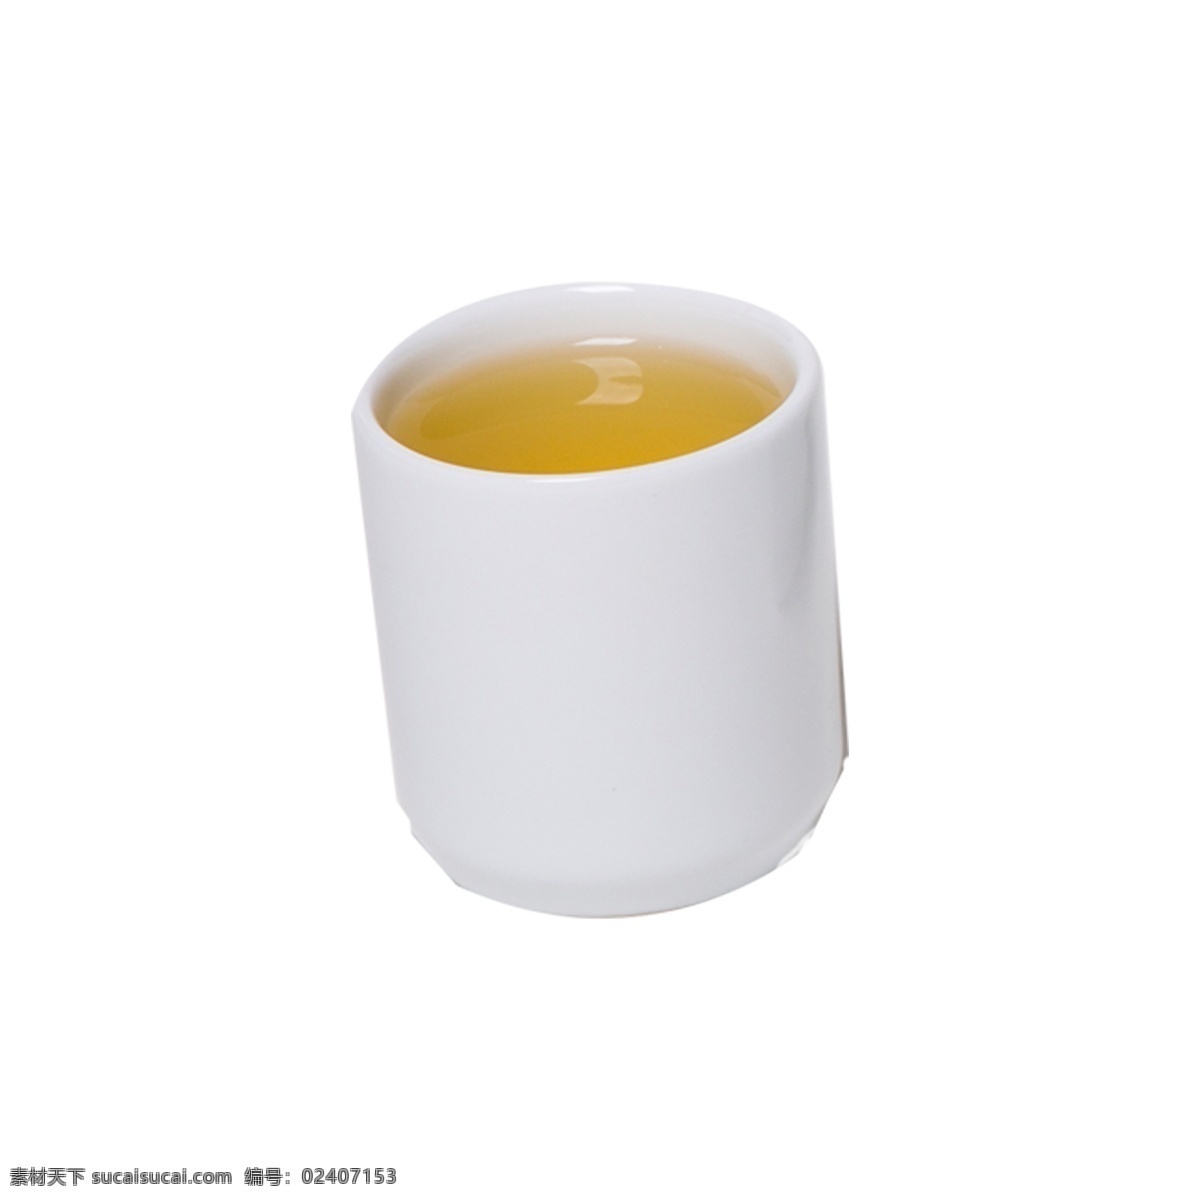 白色 陶瓷 茶杯 实拍 免 抠 陶瓷杯 喝茶 养生 茶叶 茶水 杯子 简约 简洁 纯白色 摆拍